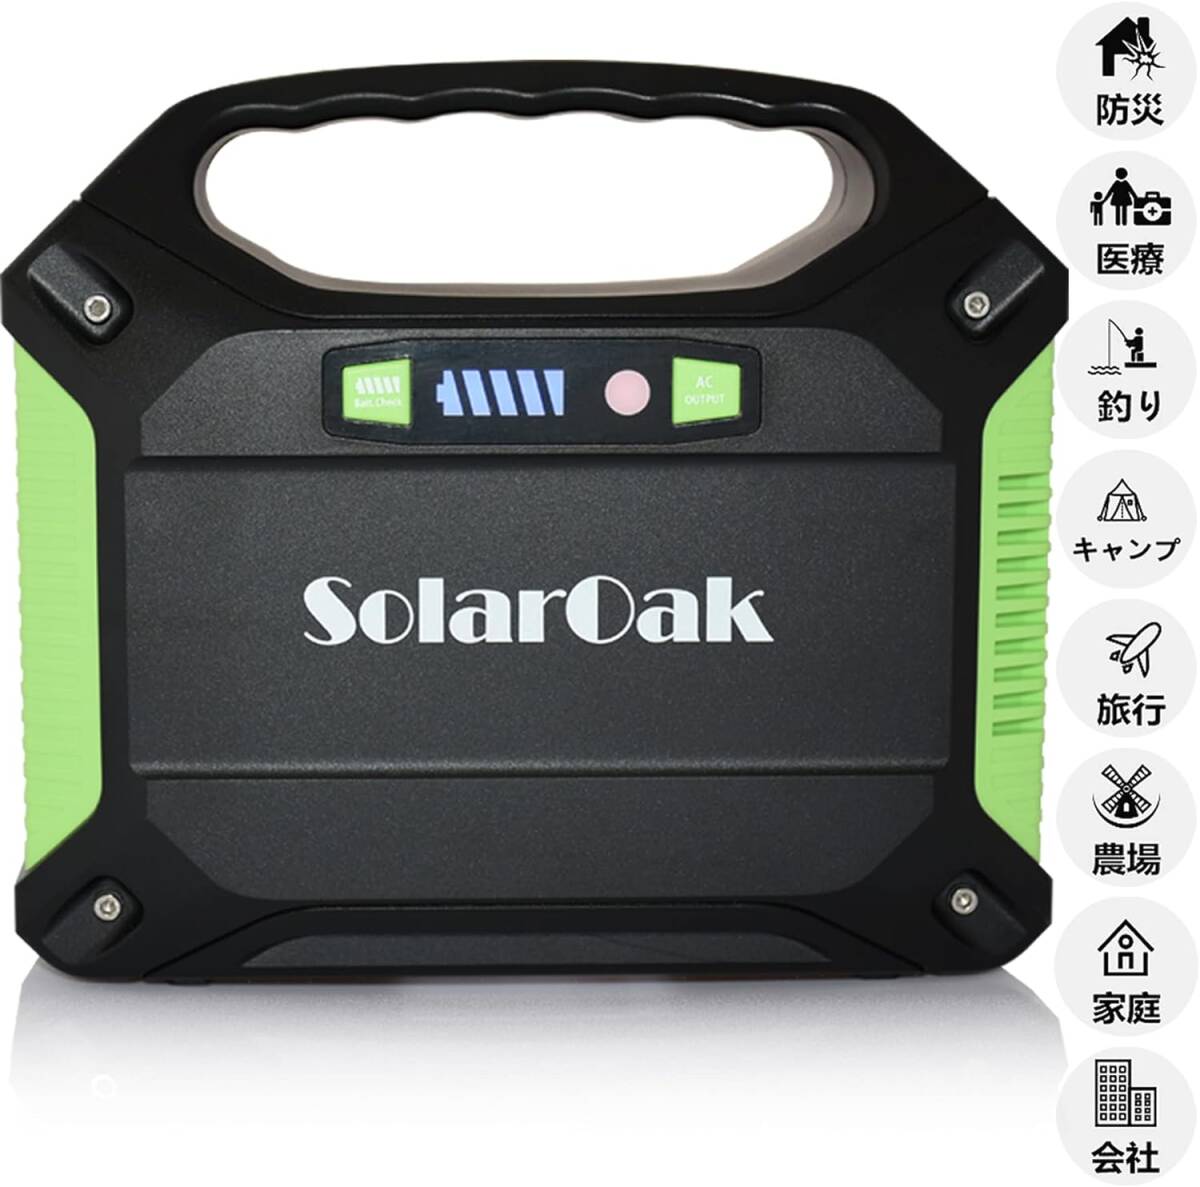 ポータブル電源 SolarOak PSE認証済 42000mAh/155Wh AC/DC/USB出力 アウトドア キャンプ 停電 防災グッズ 非常用電源の画像2